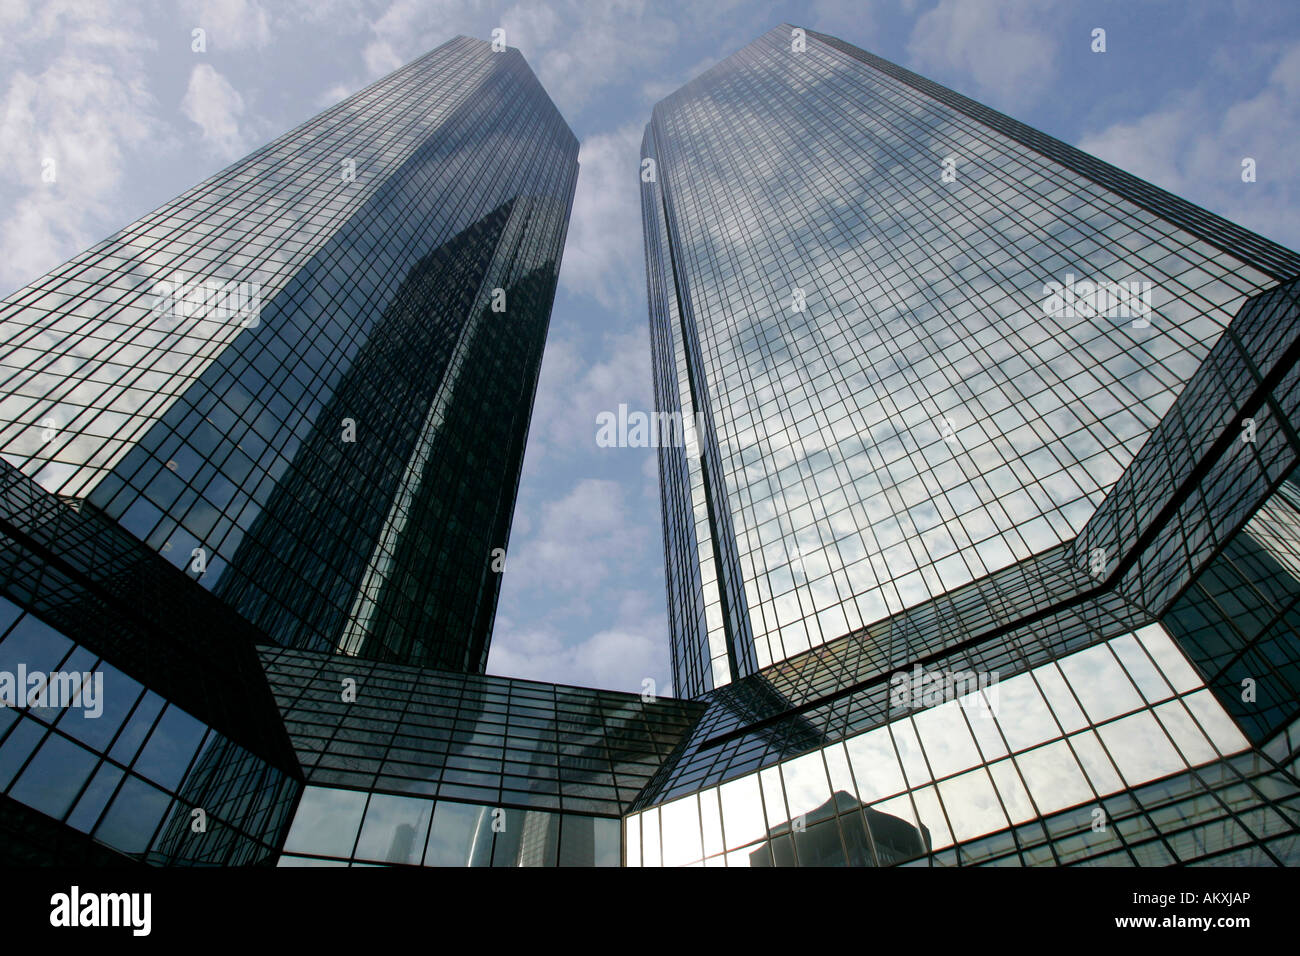 The towers of the Deutsche Bank in Frankfurt, Hessen, Germany. Stock Photo